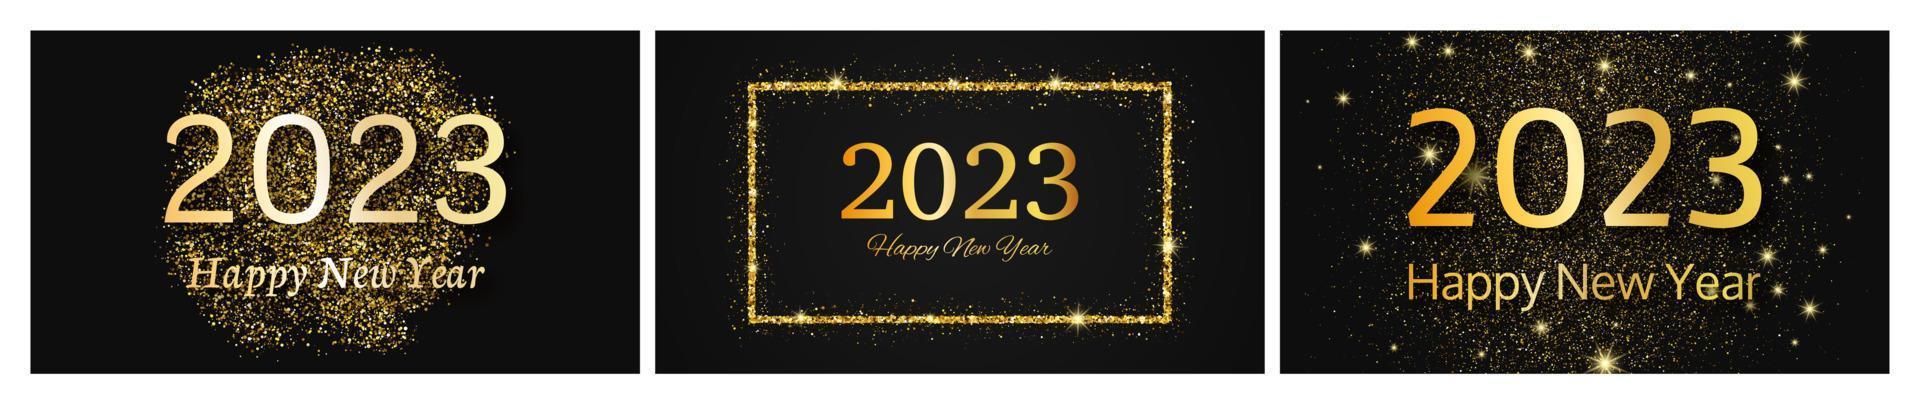 2023 feliz año nuevo fondo de oro vector